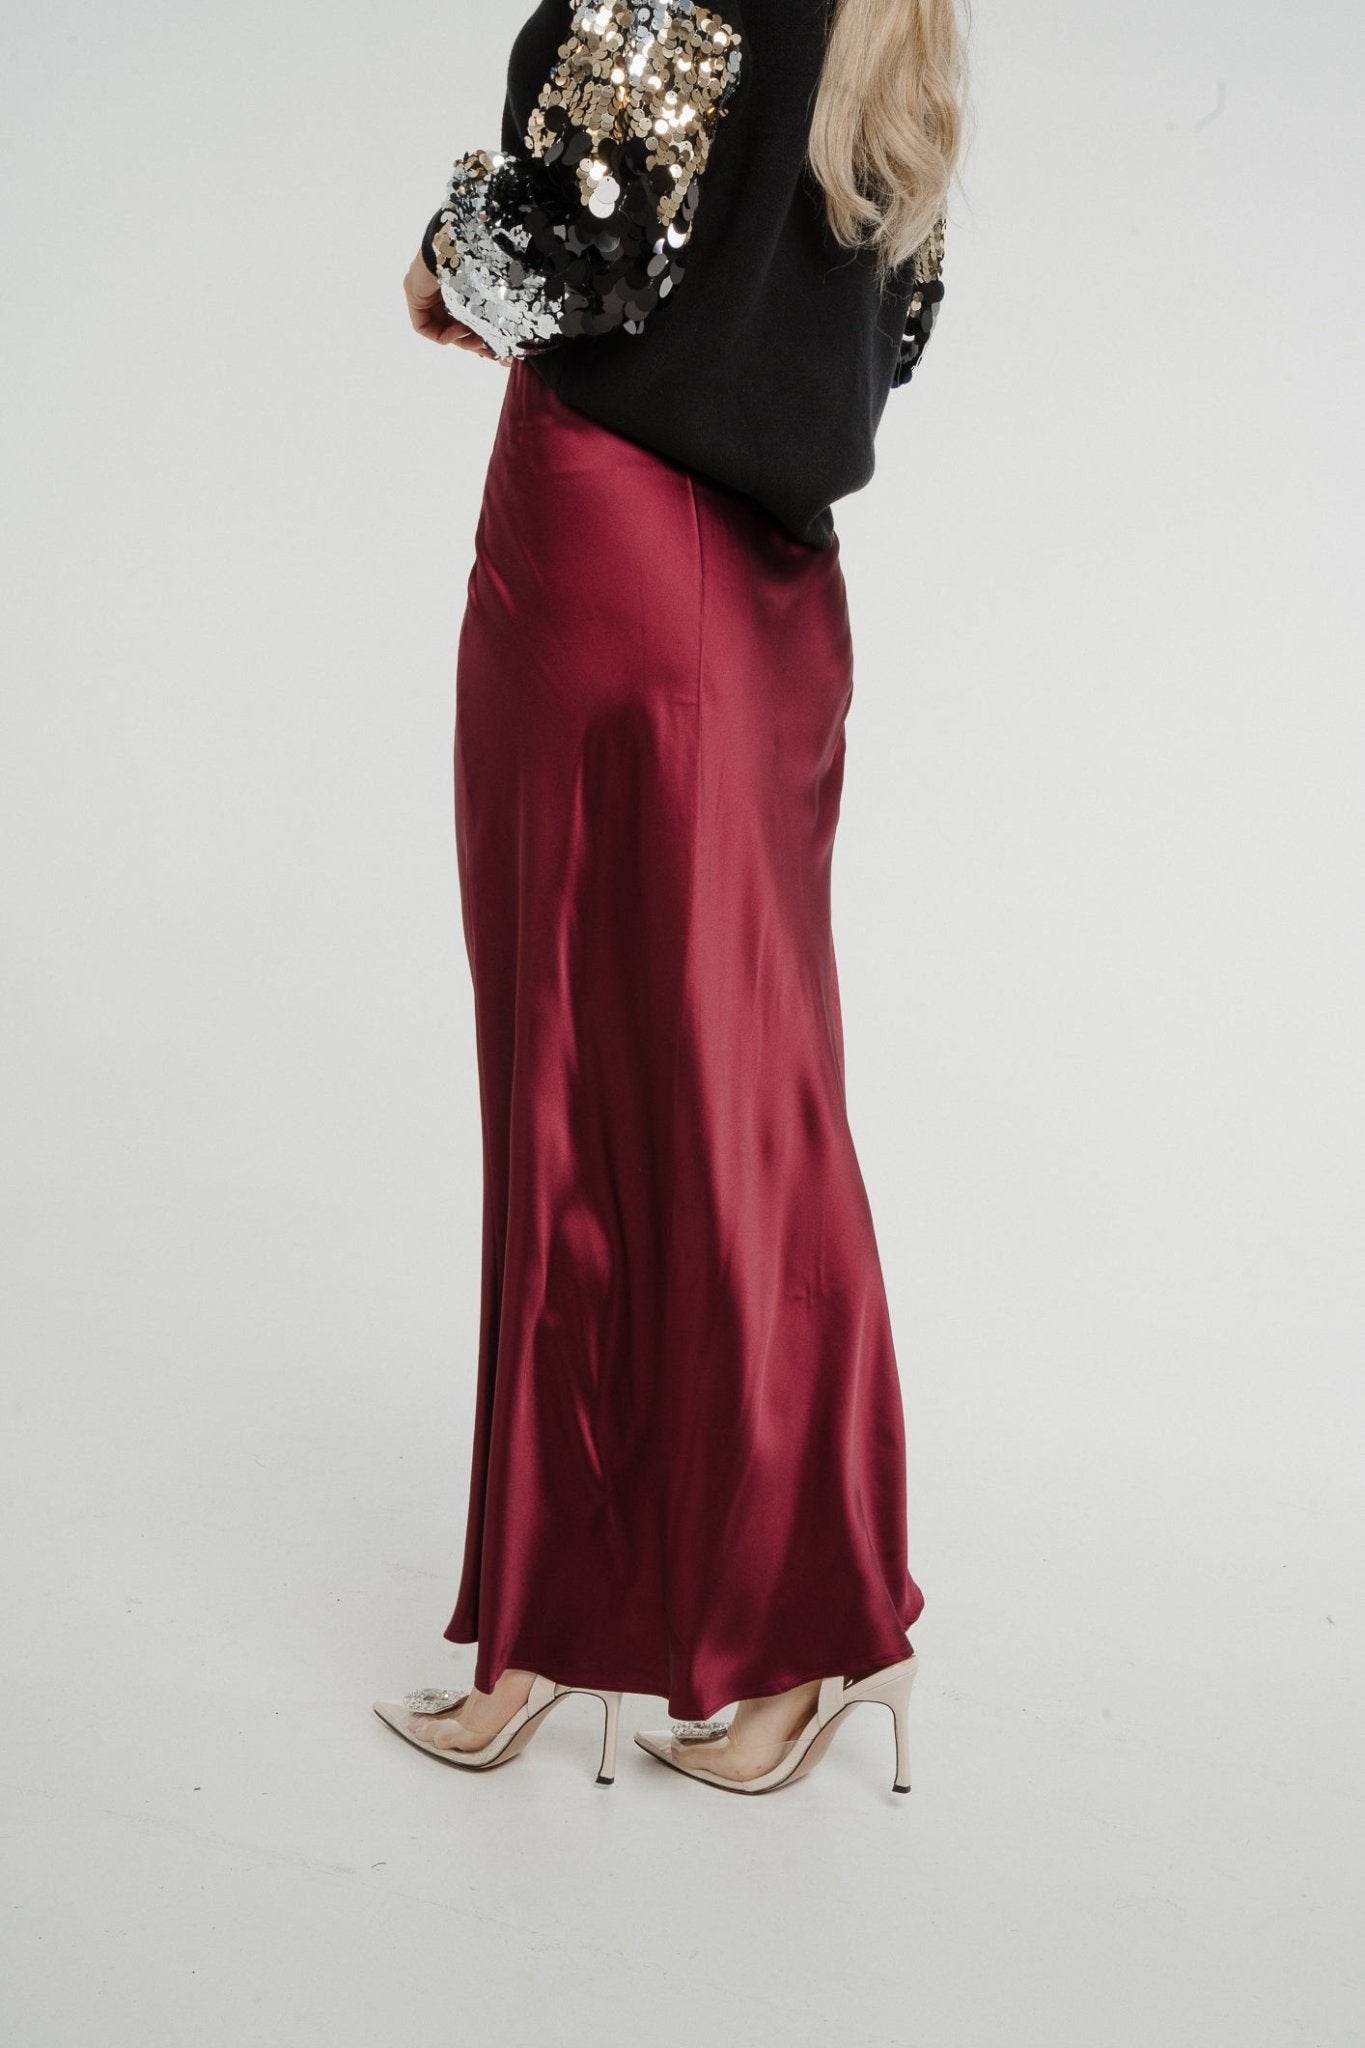 Elsa Longline Satin Skirt In Bordeaux - The Walk in Wardrobe